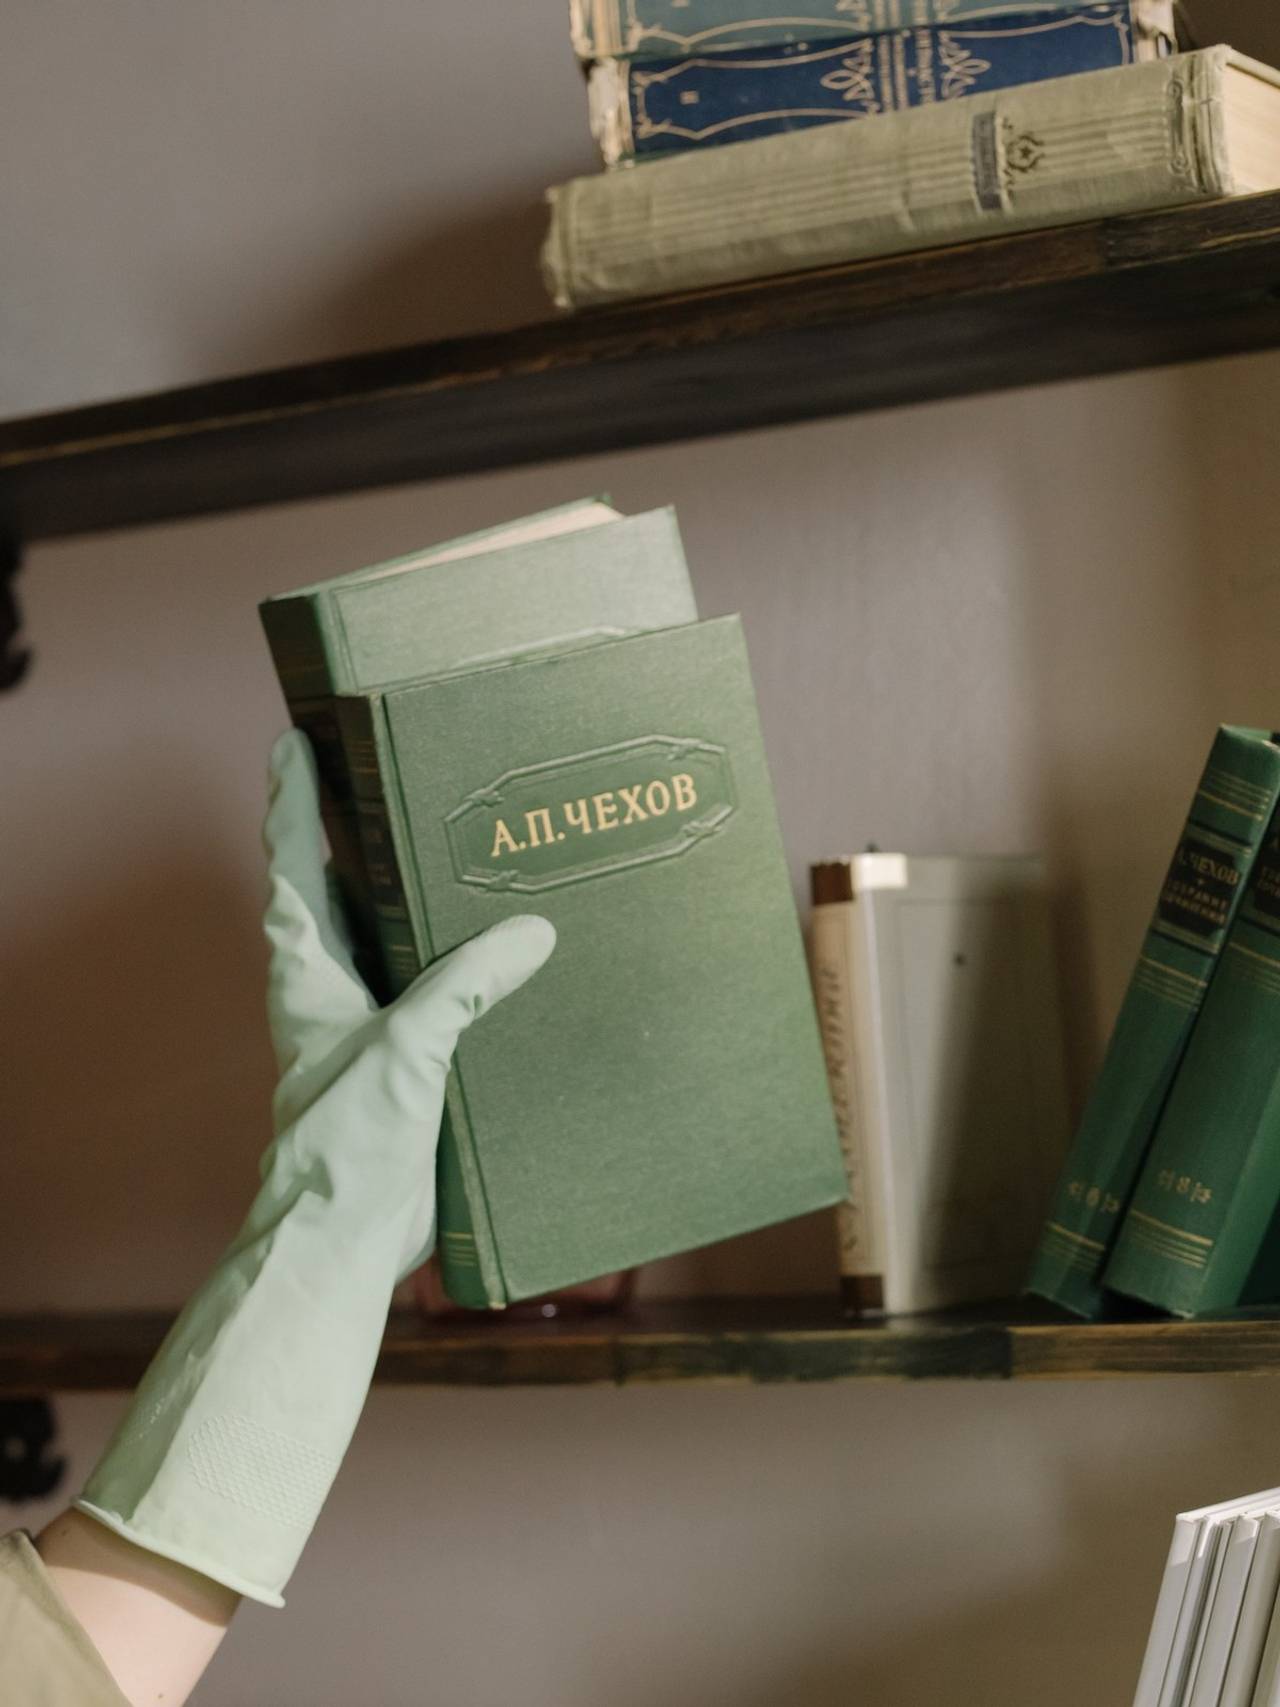 Mão com luva verde segurando dois livros de capa verde e colocando eles numa estante no sentido vertical